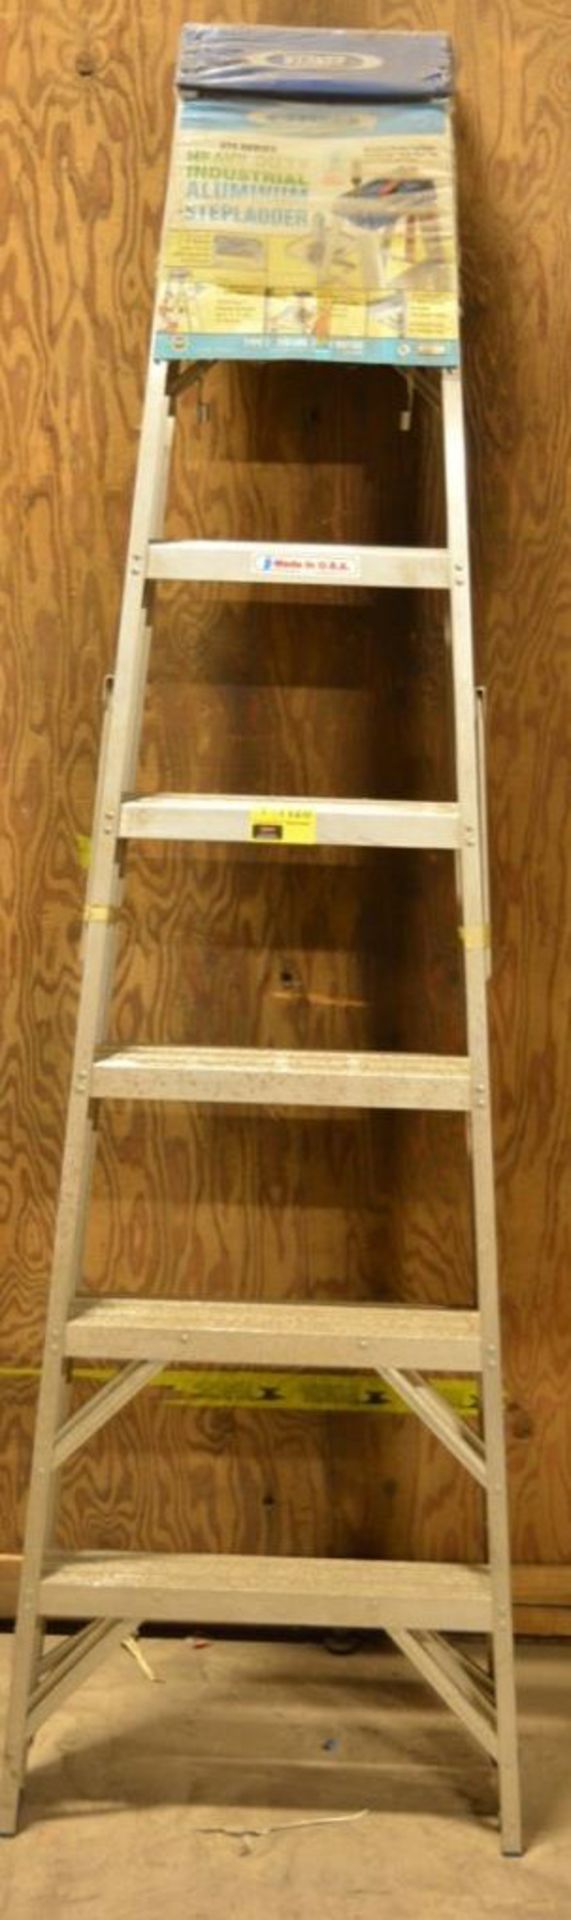 Werner #377 7' Aluminum Step Ladder